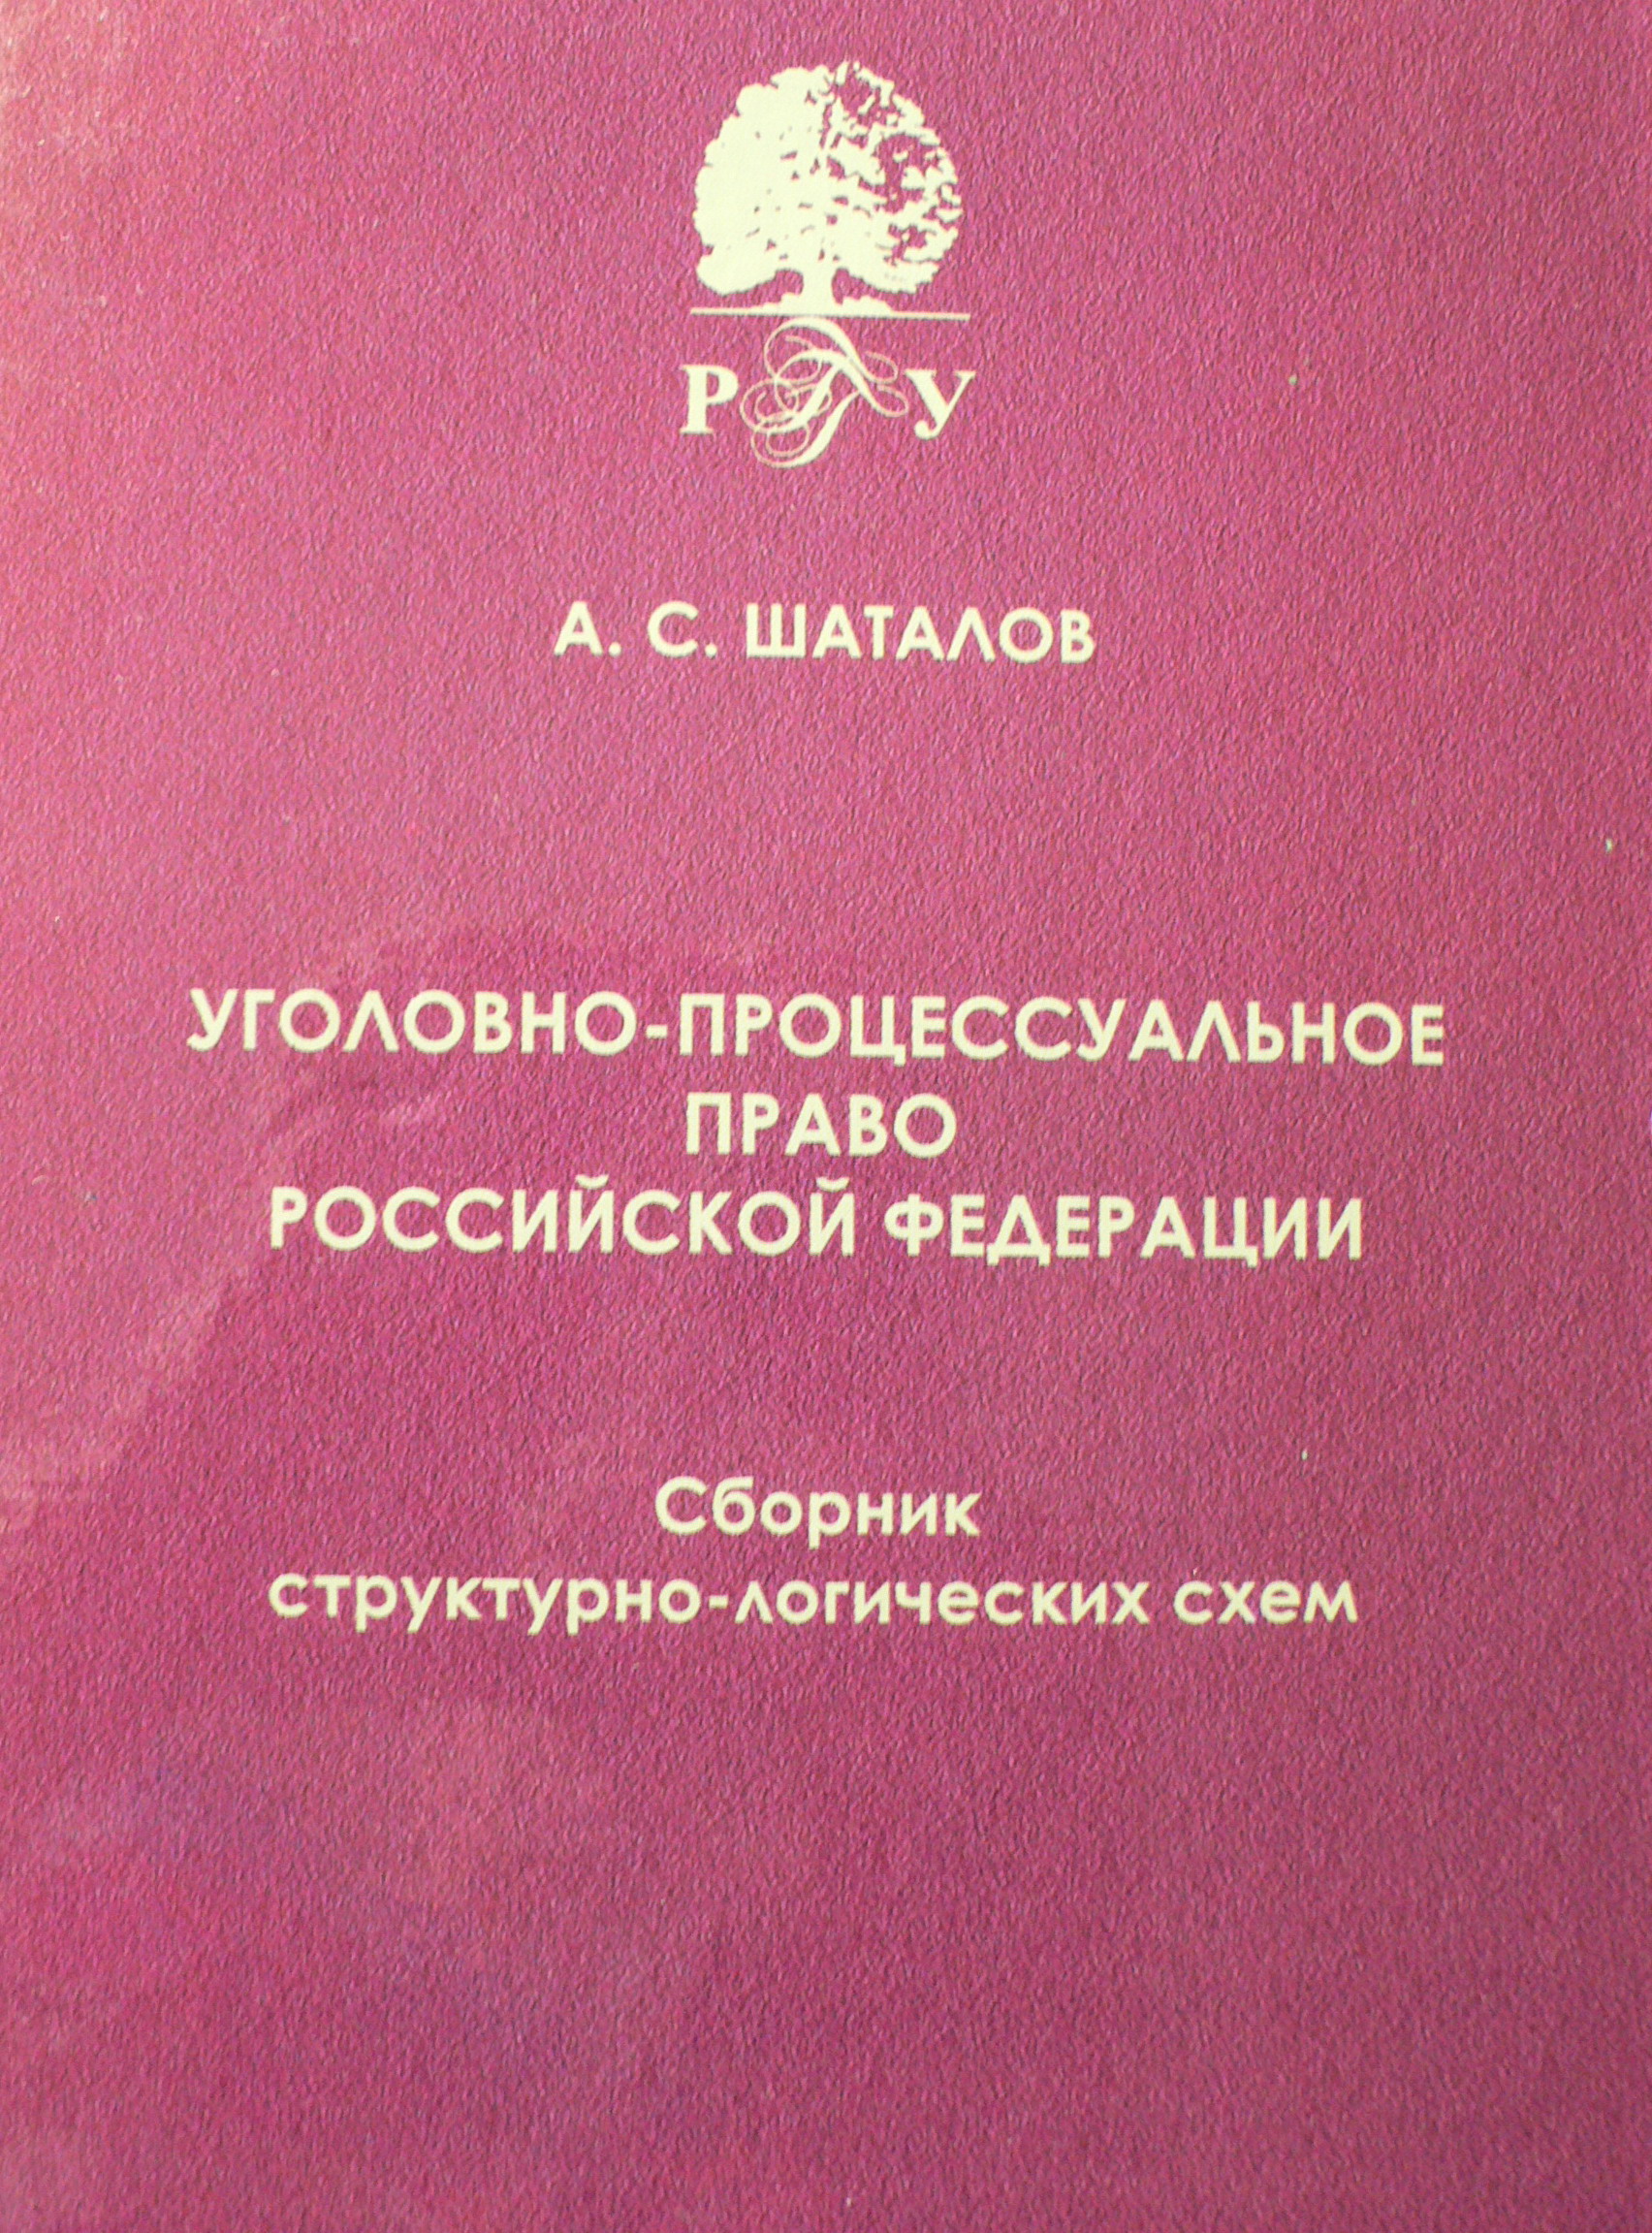 Уголовно-процессуальное право Российской Федерации. Сборник структурно-логических схем